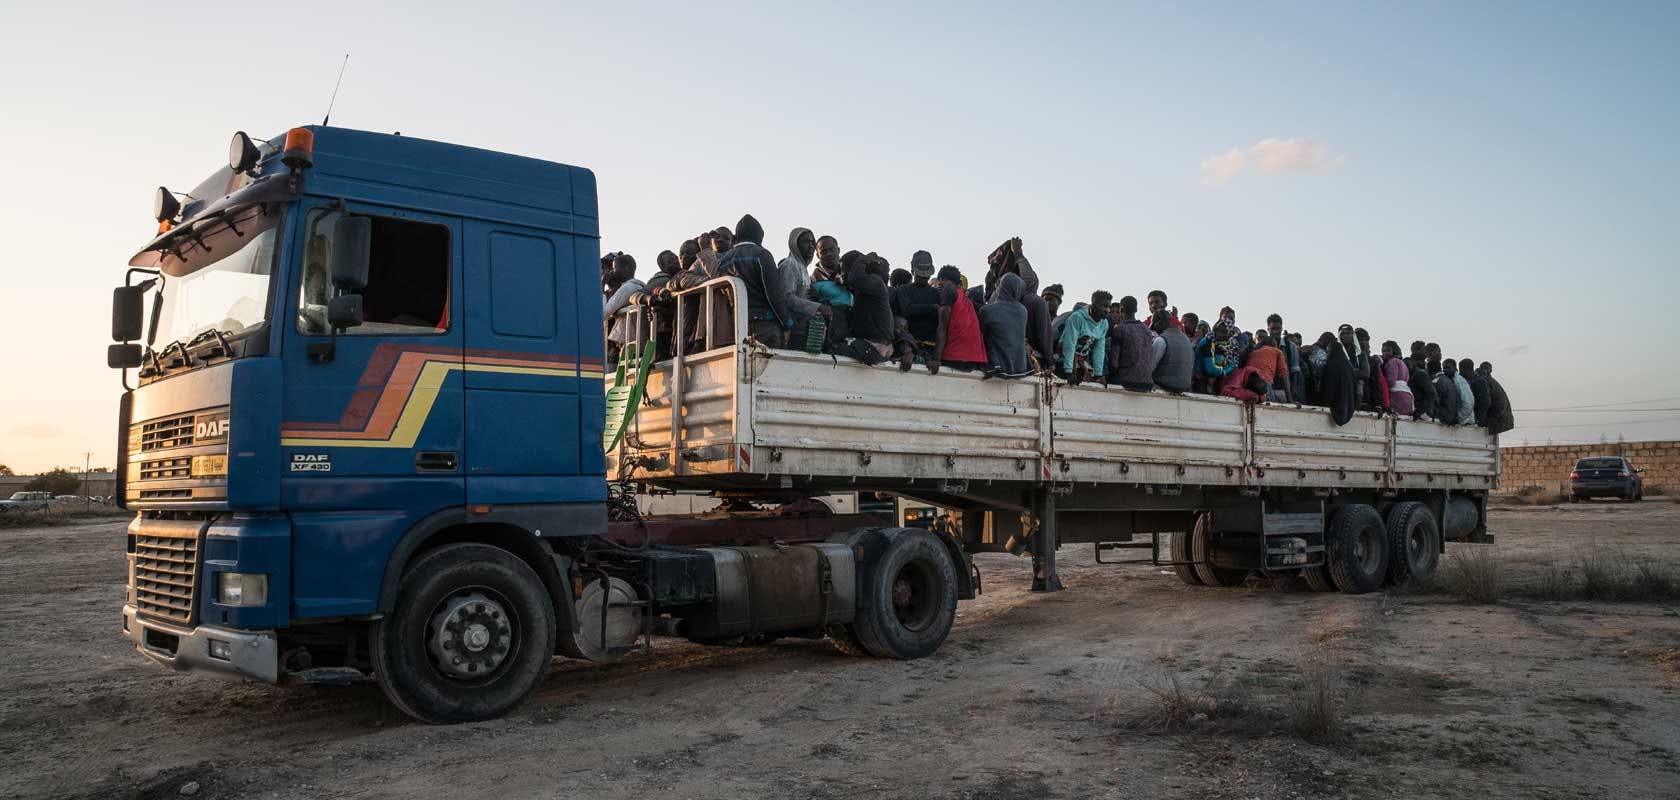 Réfugiés transportés vers un centre de détention en Libye